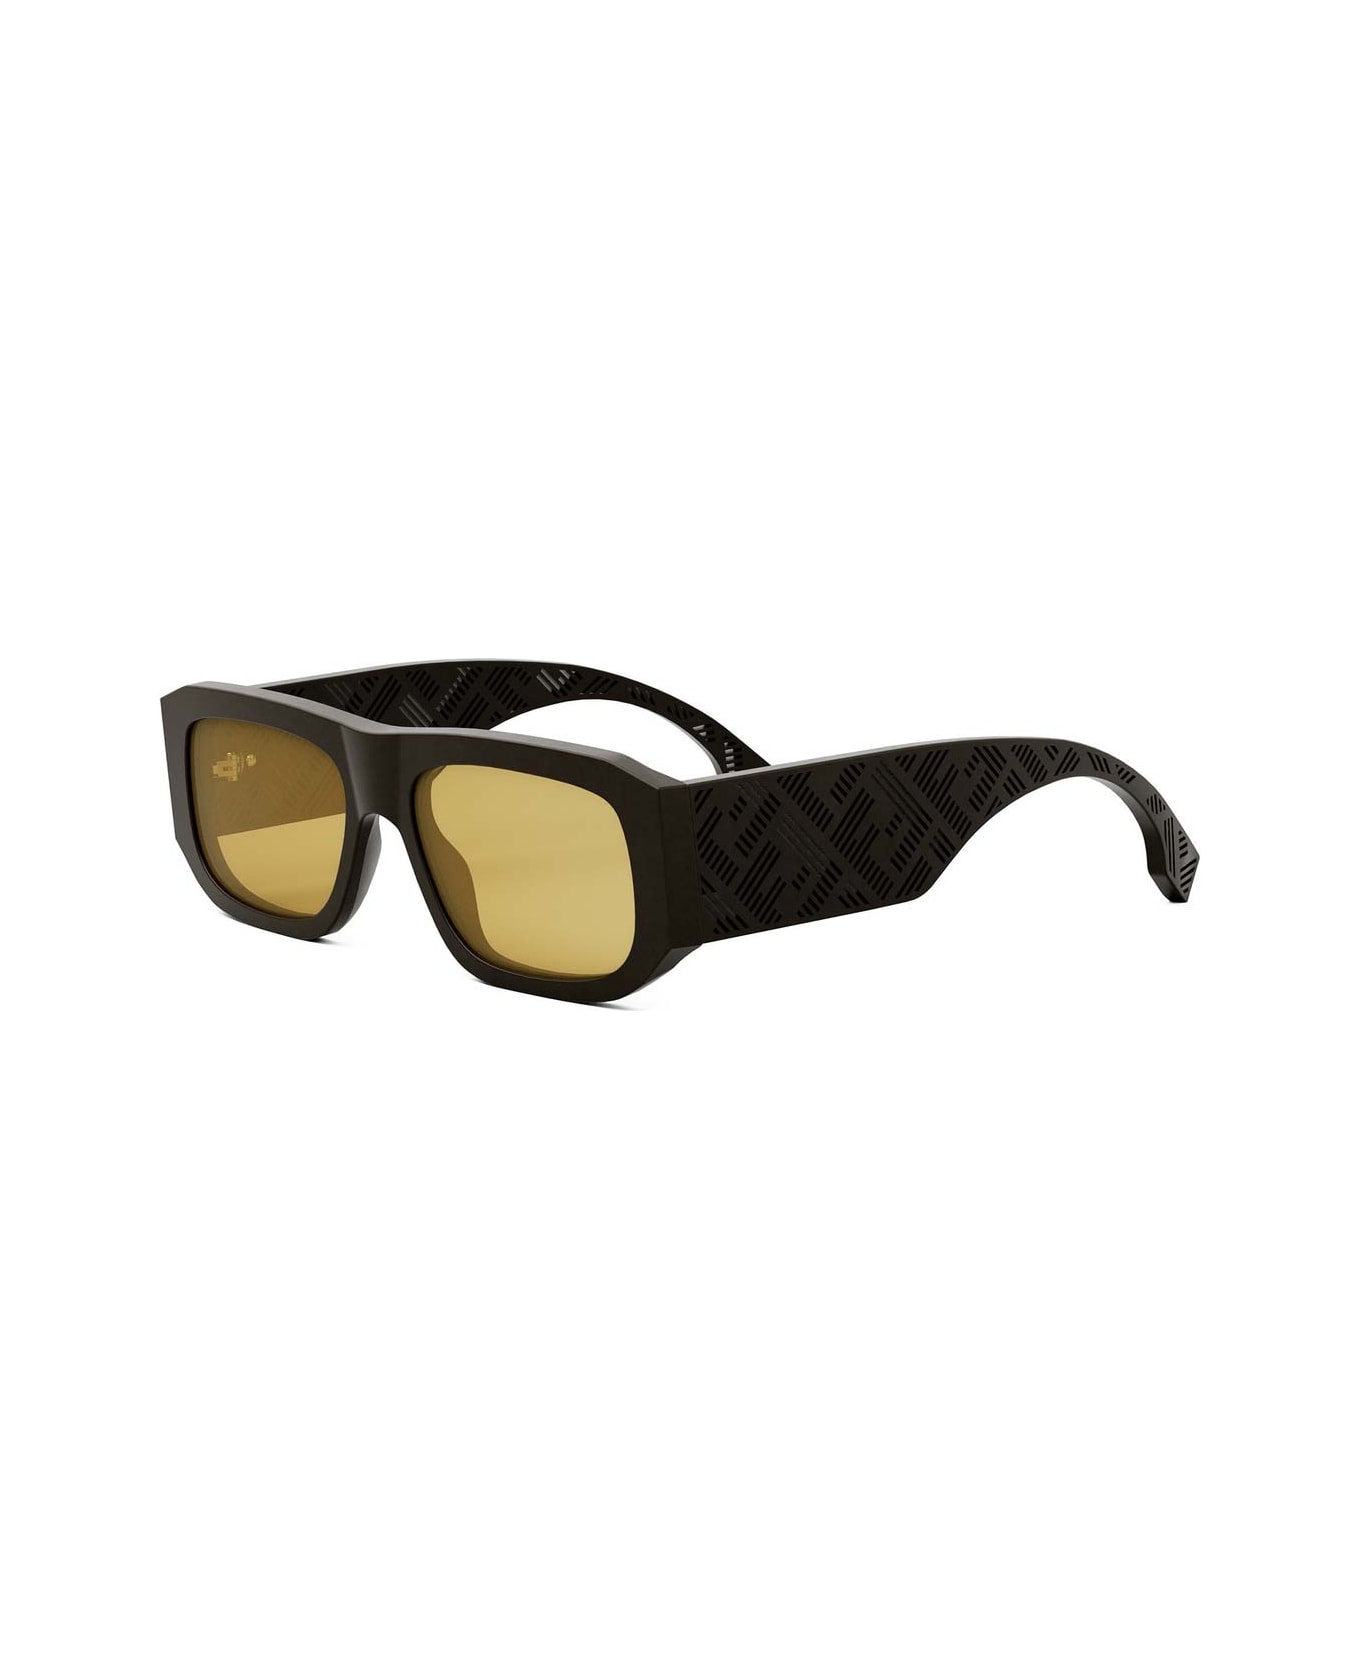 Fendi Eyewear Sunglasses - Marmorizzato rosa-marrone/Gialla